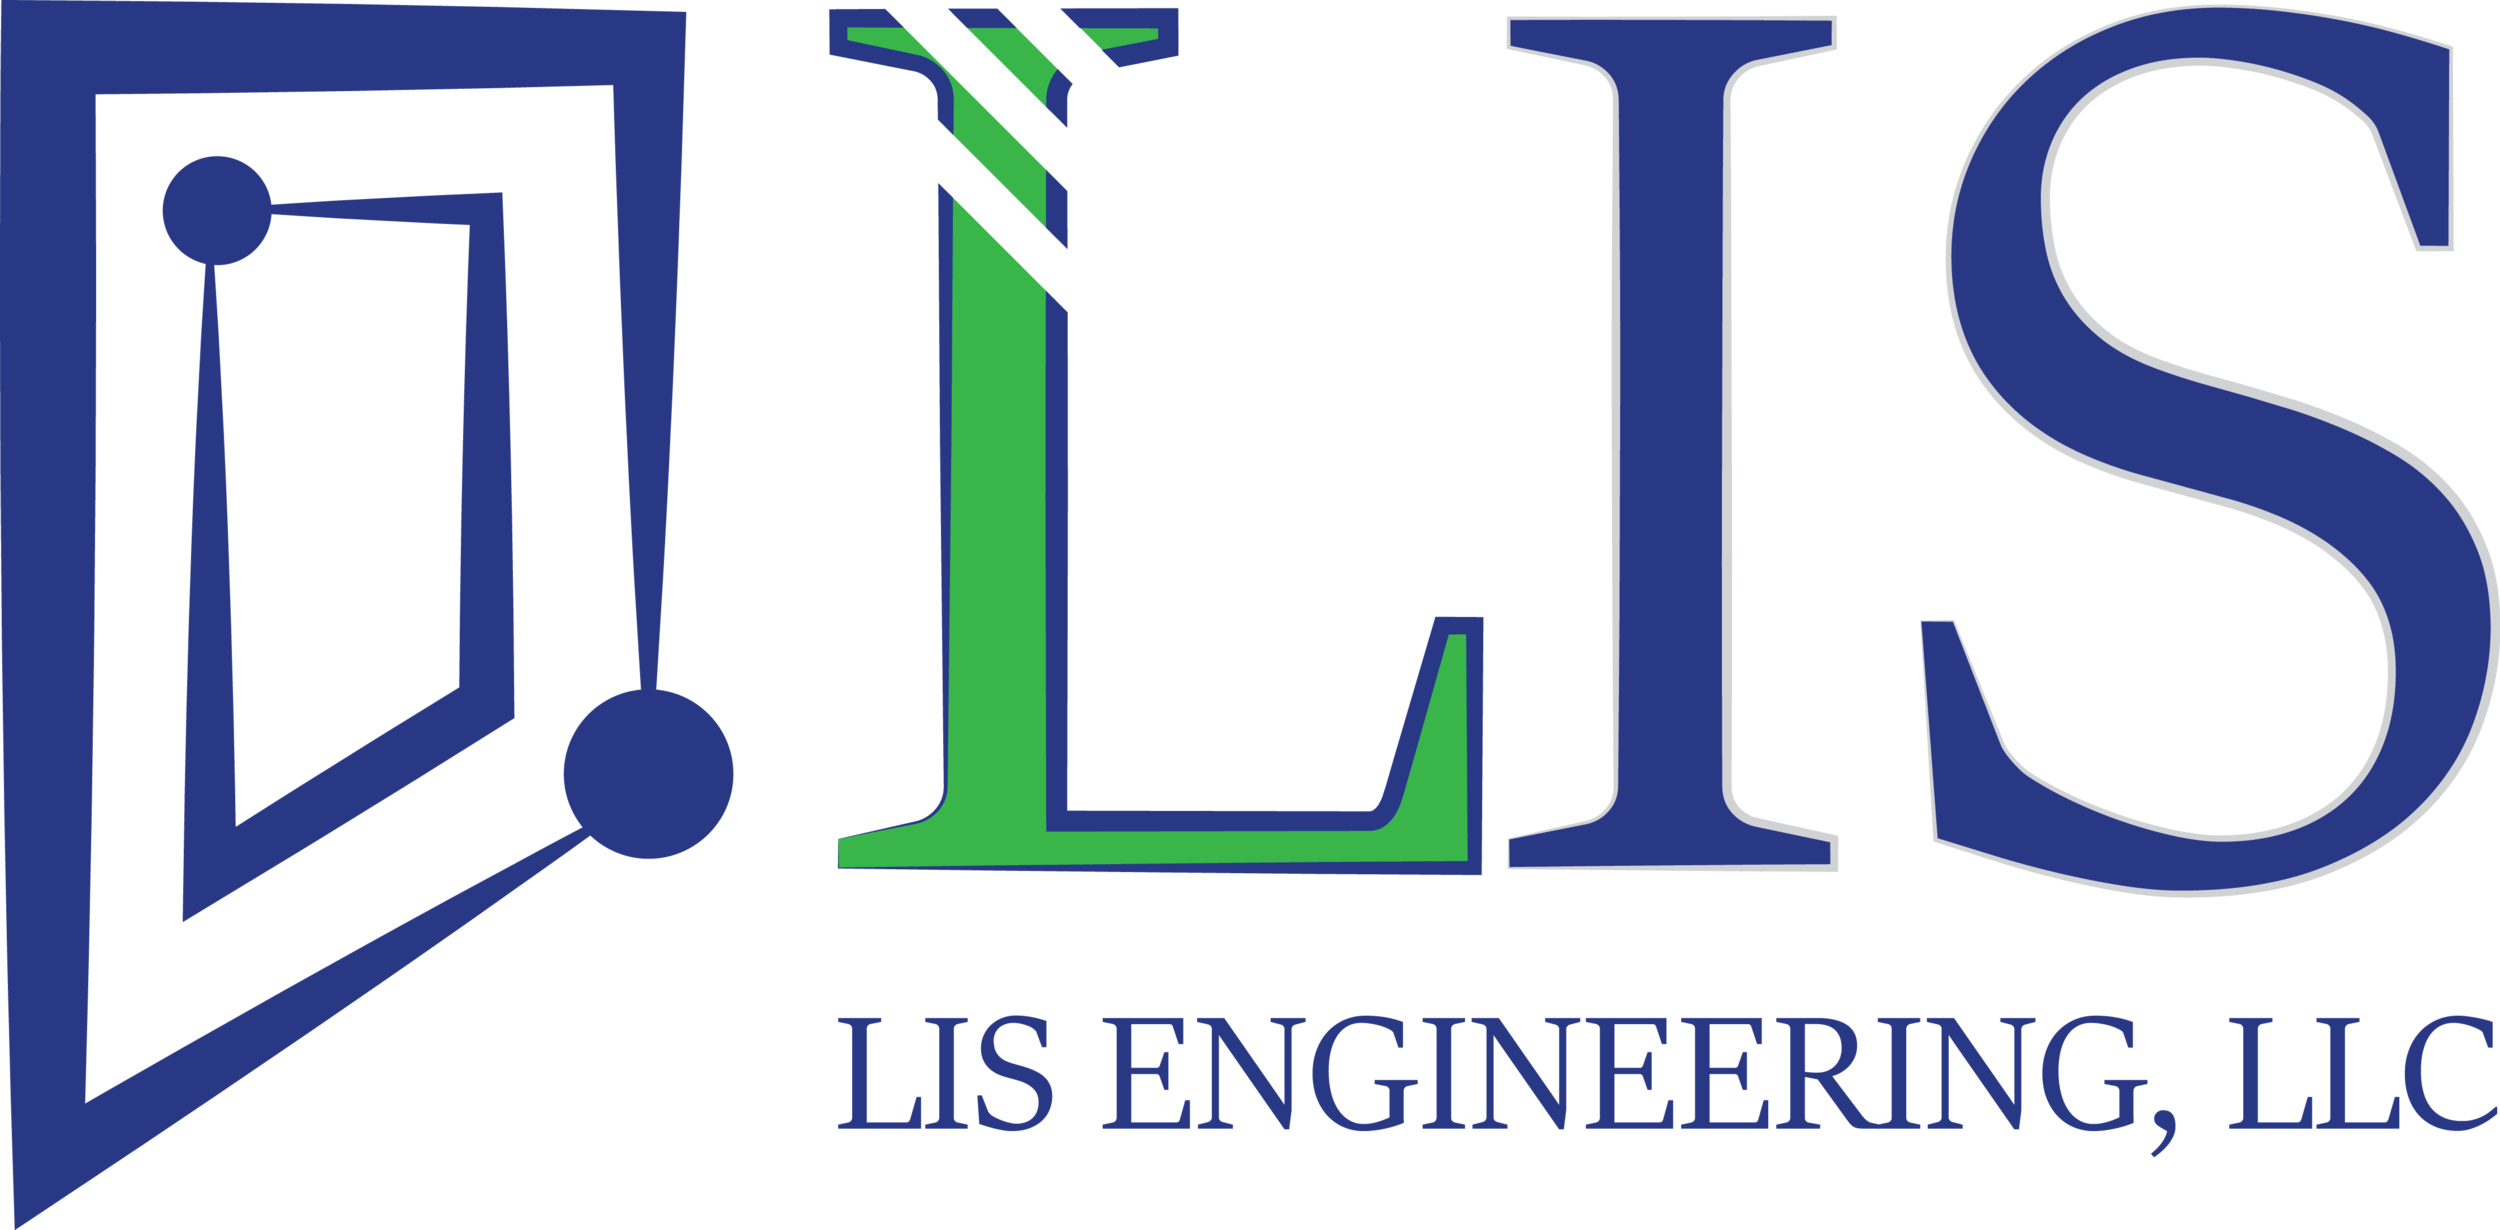 UPDATE: — LIS Engineering, LLC